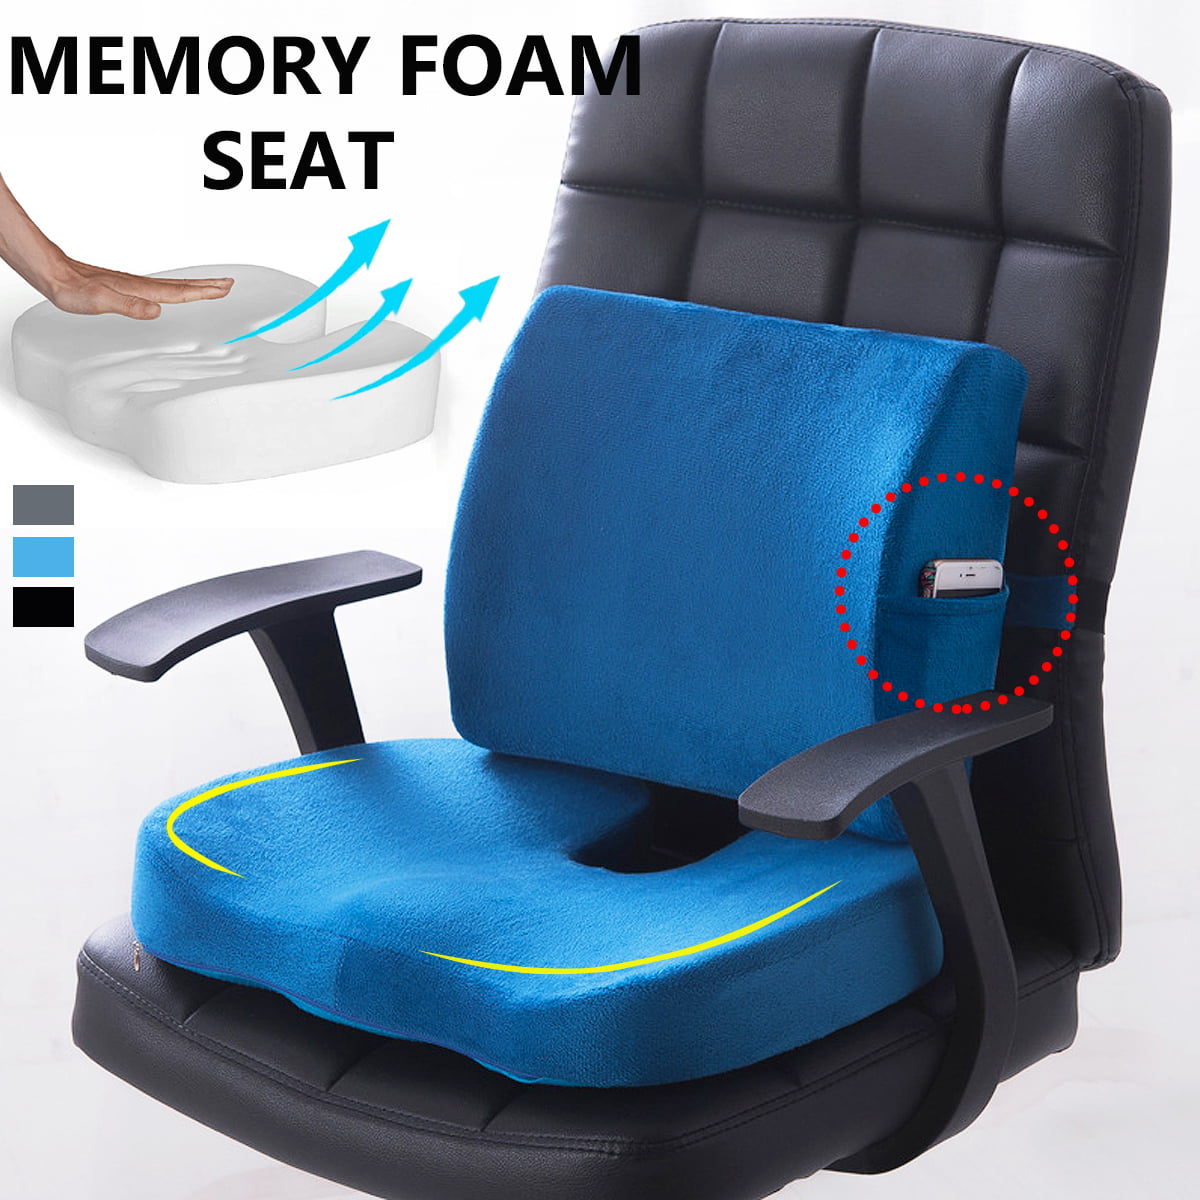 2pcs Memory Foam Seat Cushion Lumbar, Best Memory Foam Seat Cushion Uk